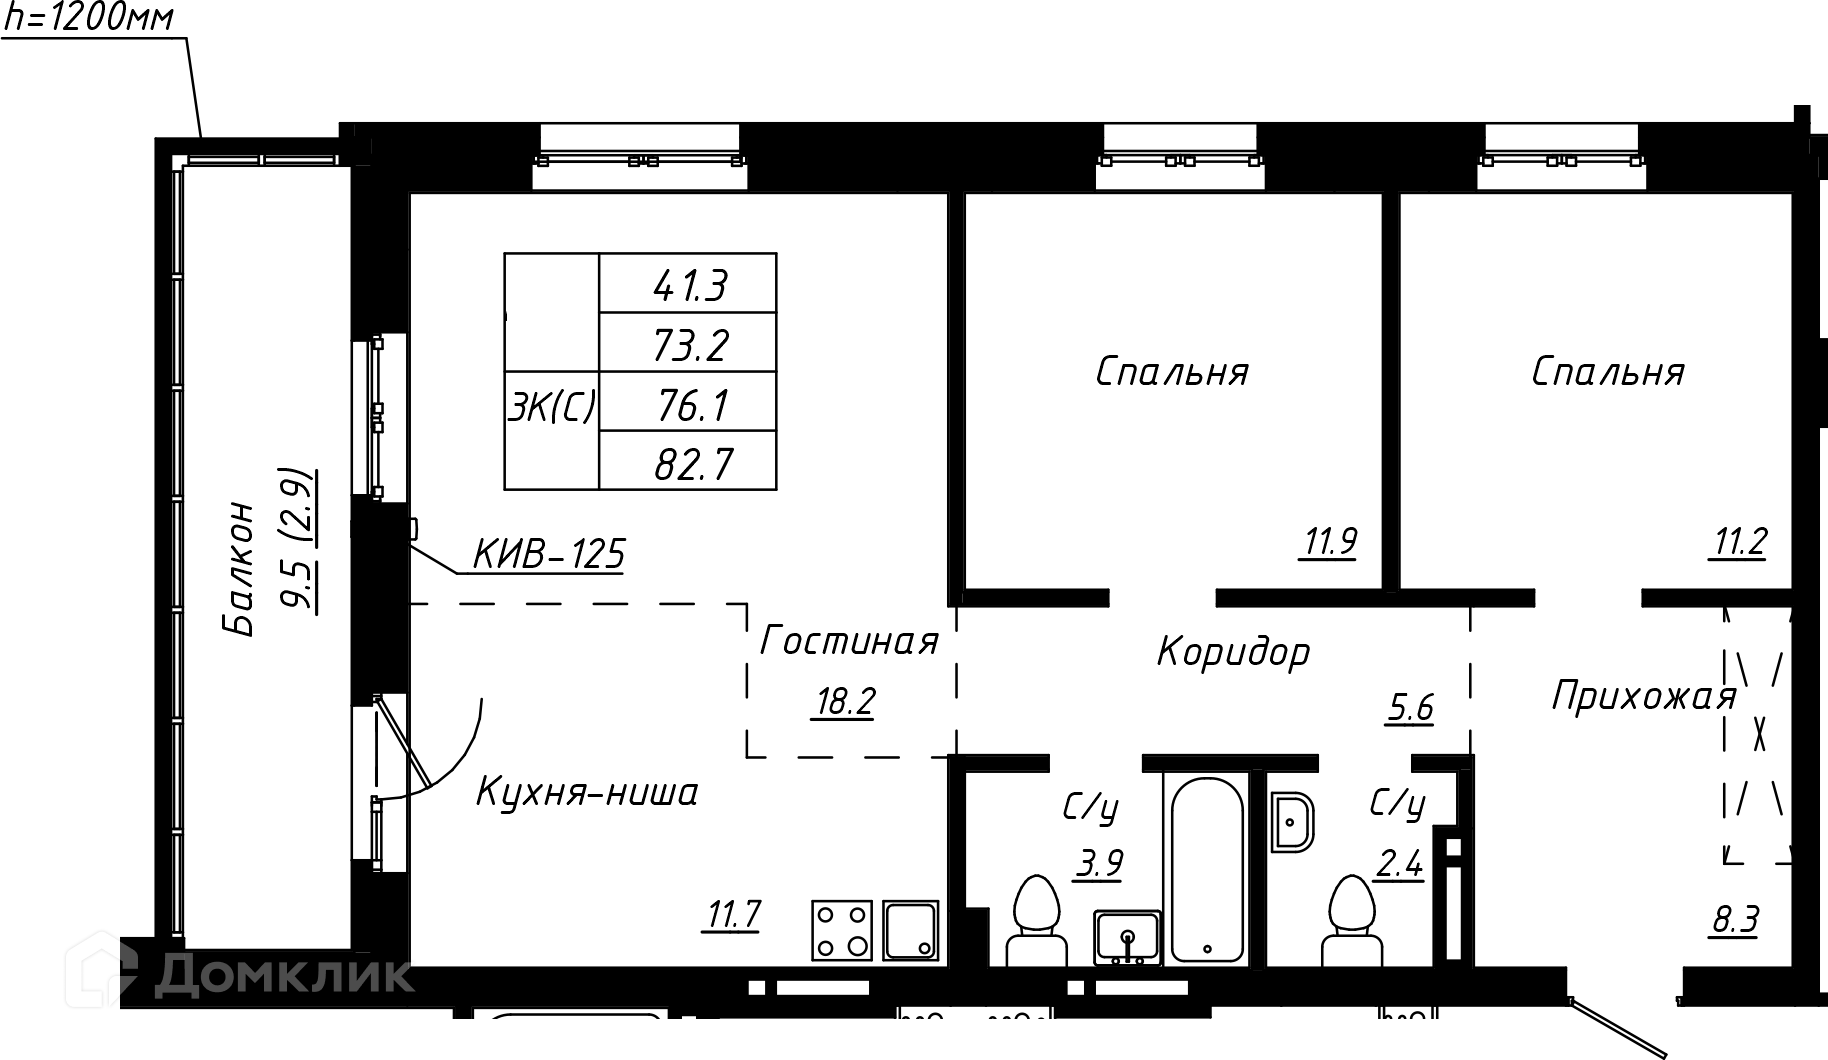 3-комнатная квартира 76.1м2 ЖК Колумб